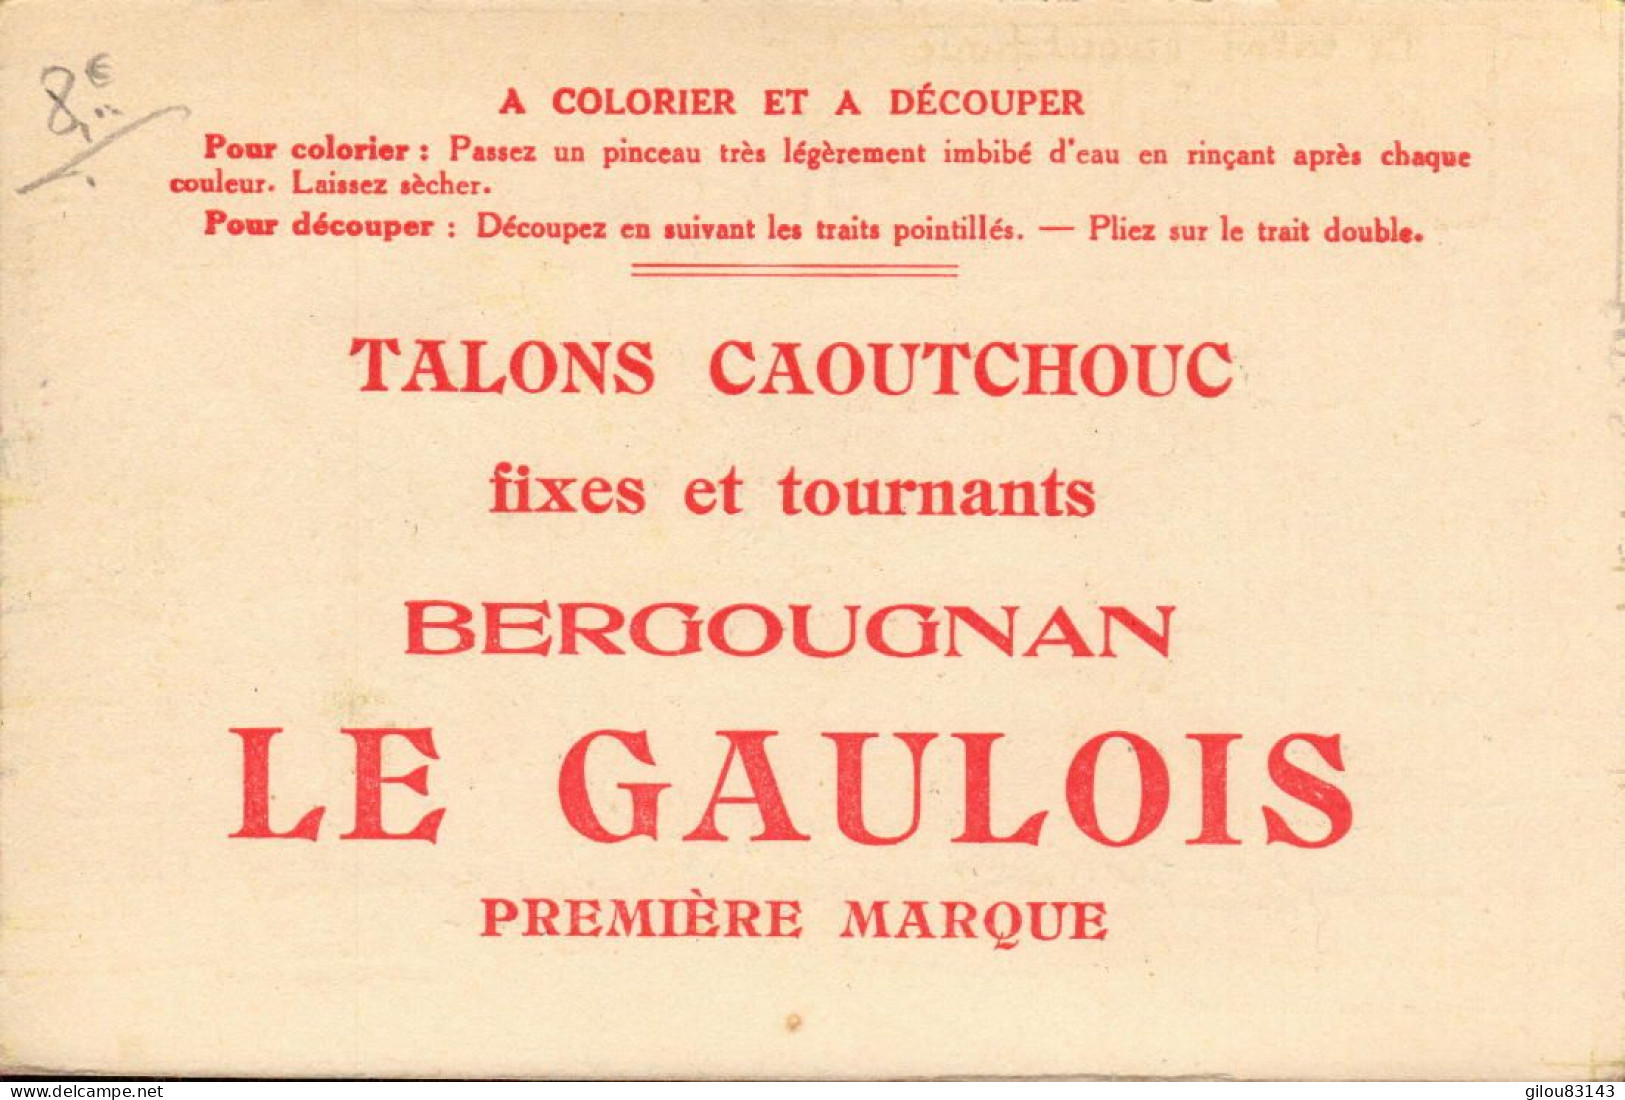 Bergougnan, Le Gaulois, Talons Caoutchouc, Illustration Rugby - Publicité